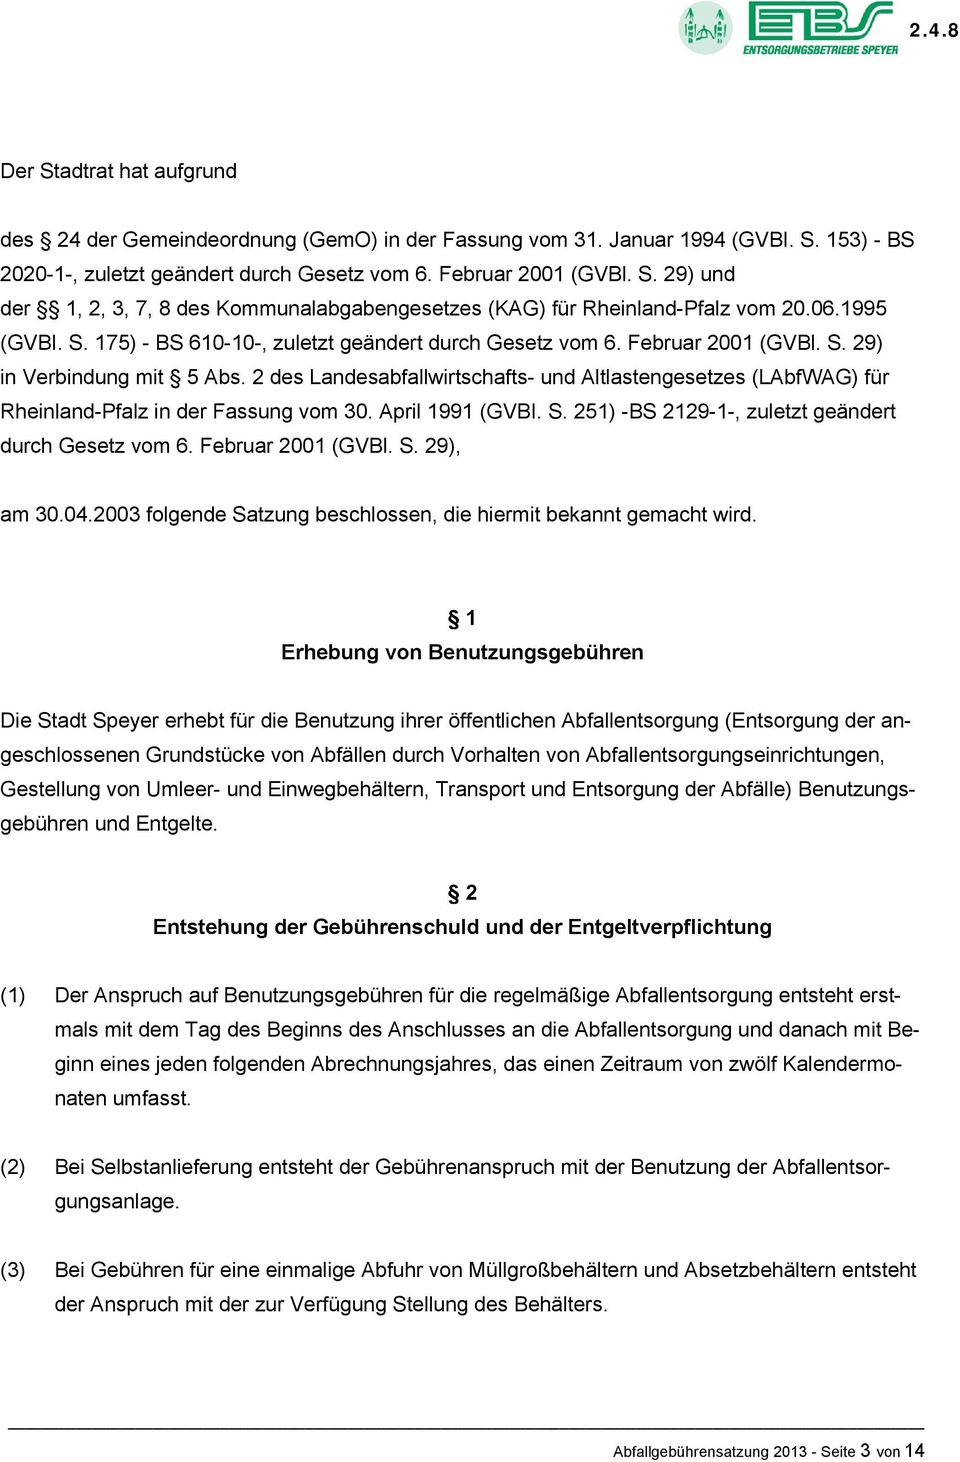 2 des Landesabfallwirtschafts- und Altlastengesetzes (LAbfWAG) für Rheinland-Pfalz in der Fassung vom 30. April 1991 (GVBI. S. 251) -BS 2129-1-, zuletzt geändert durch Gesetz vom 6.